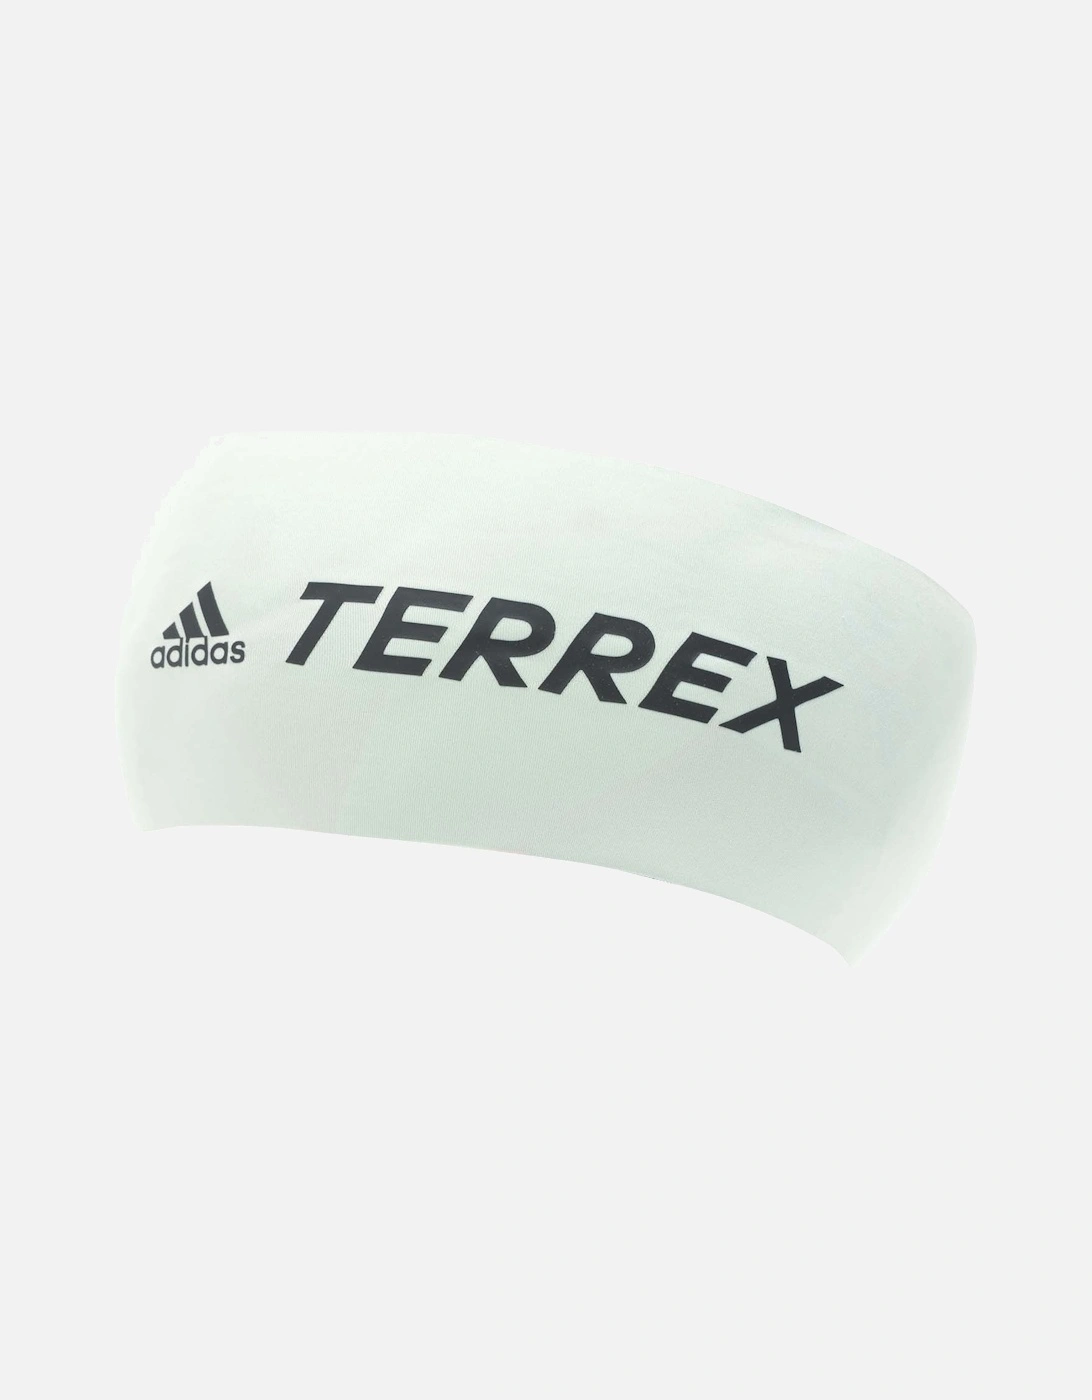 Adults Terrex Headband, 3 of 2